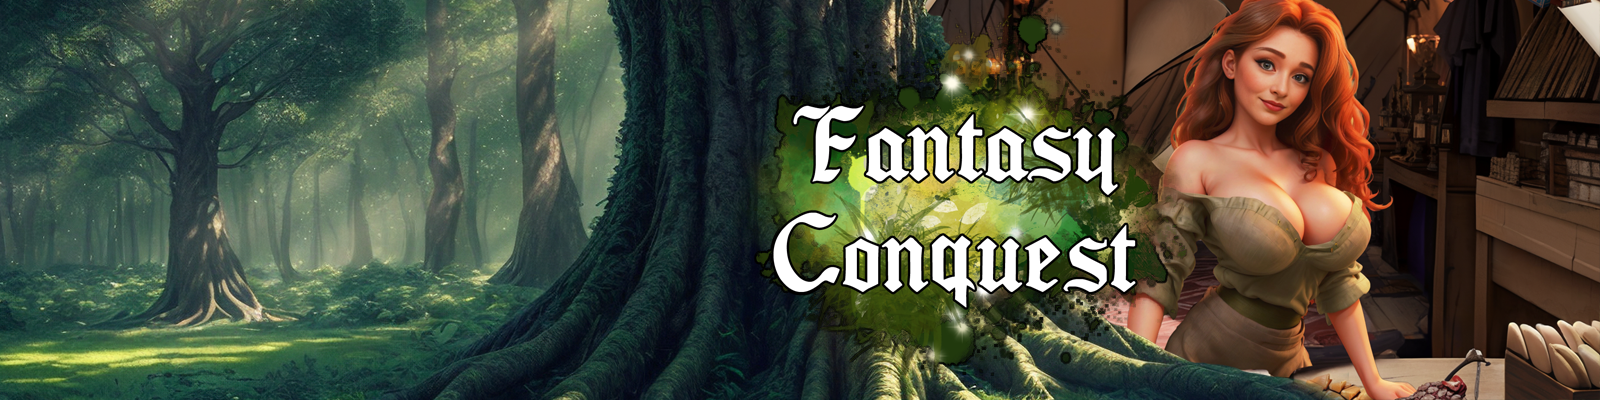 Fantasy Conquest1.png